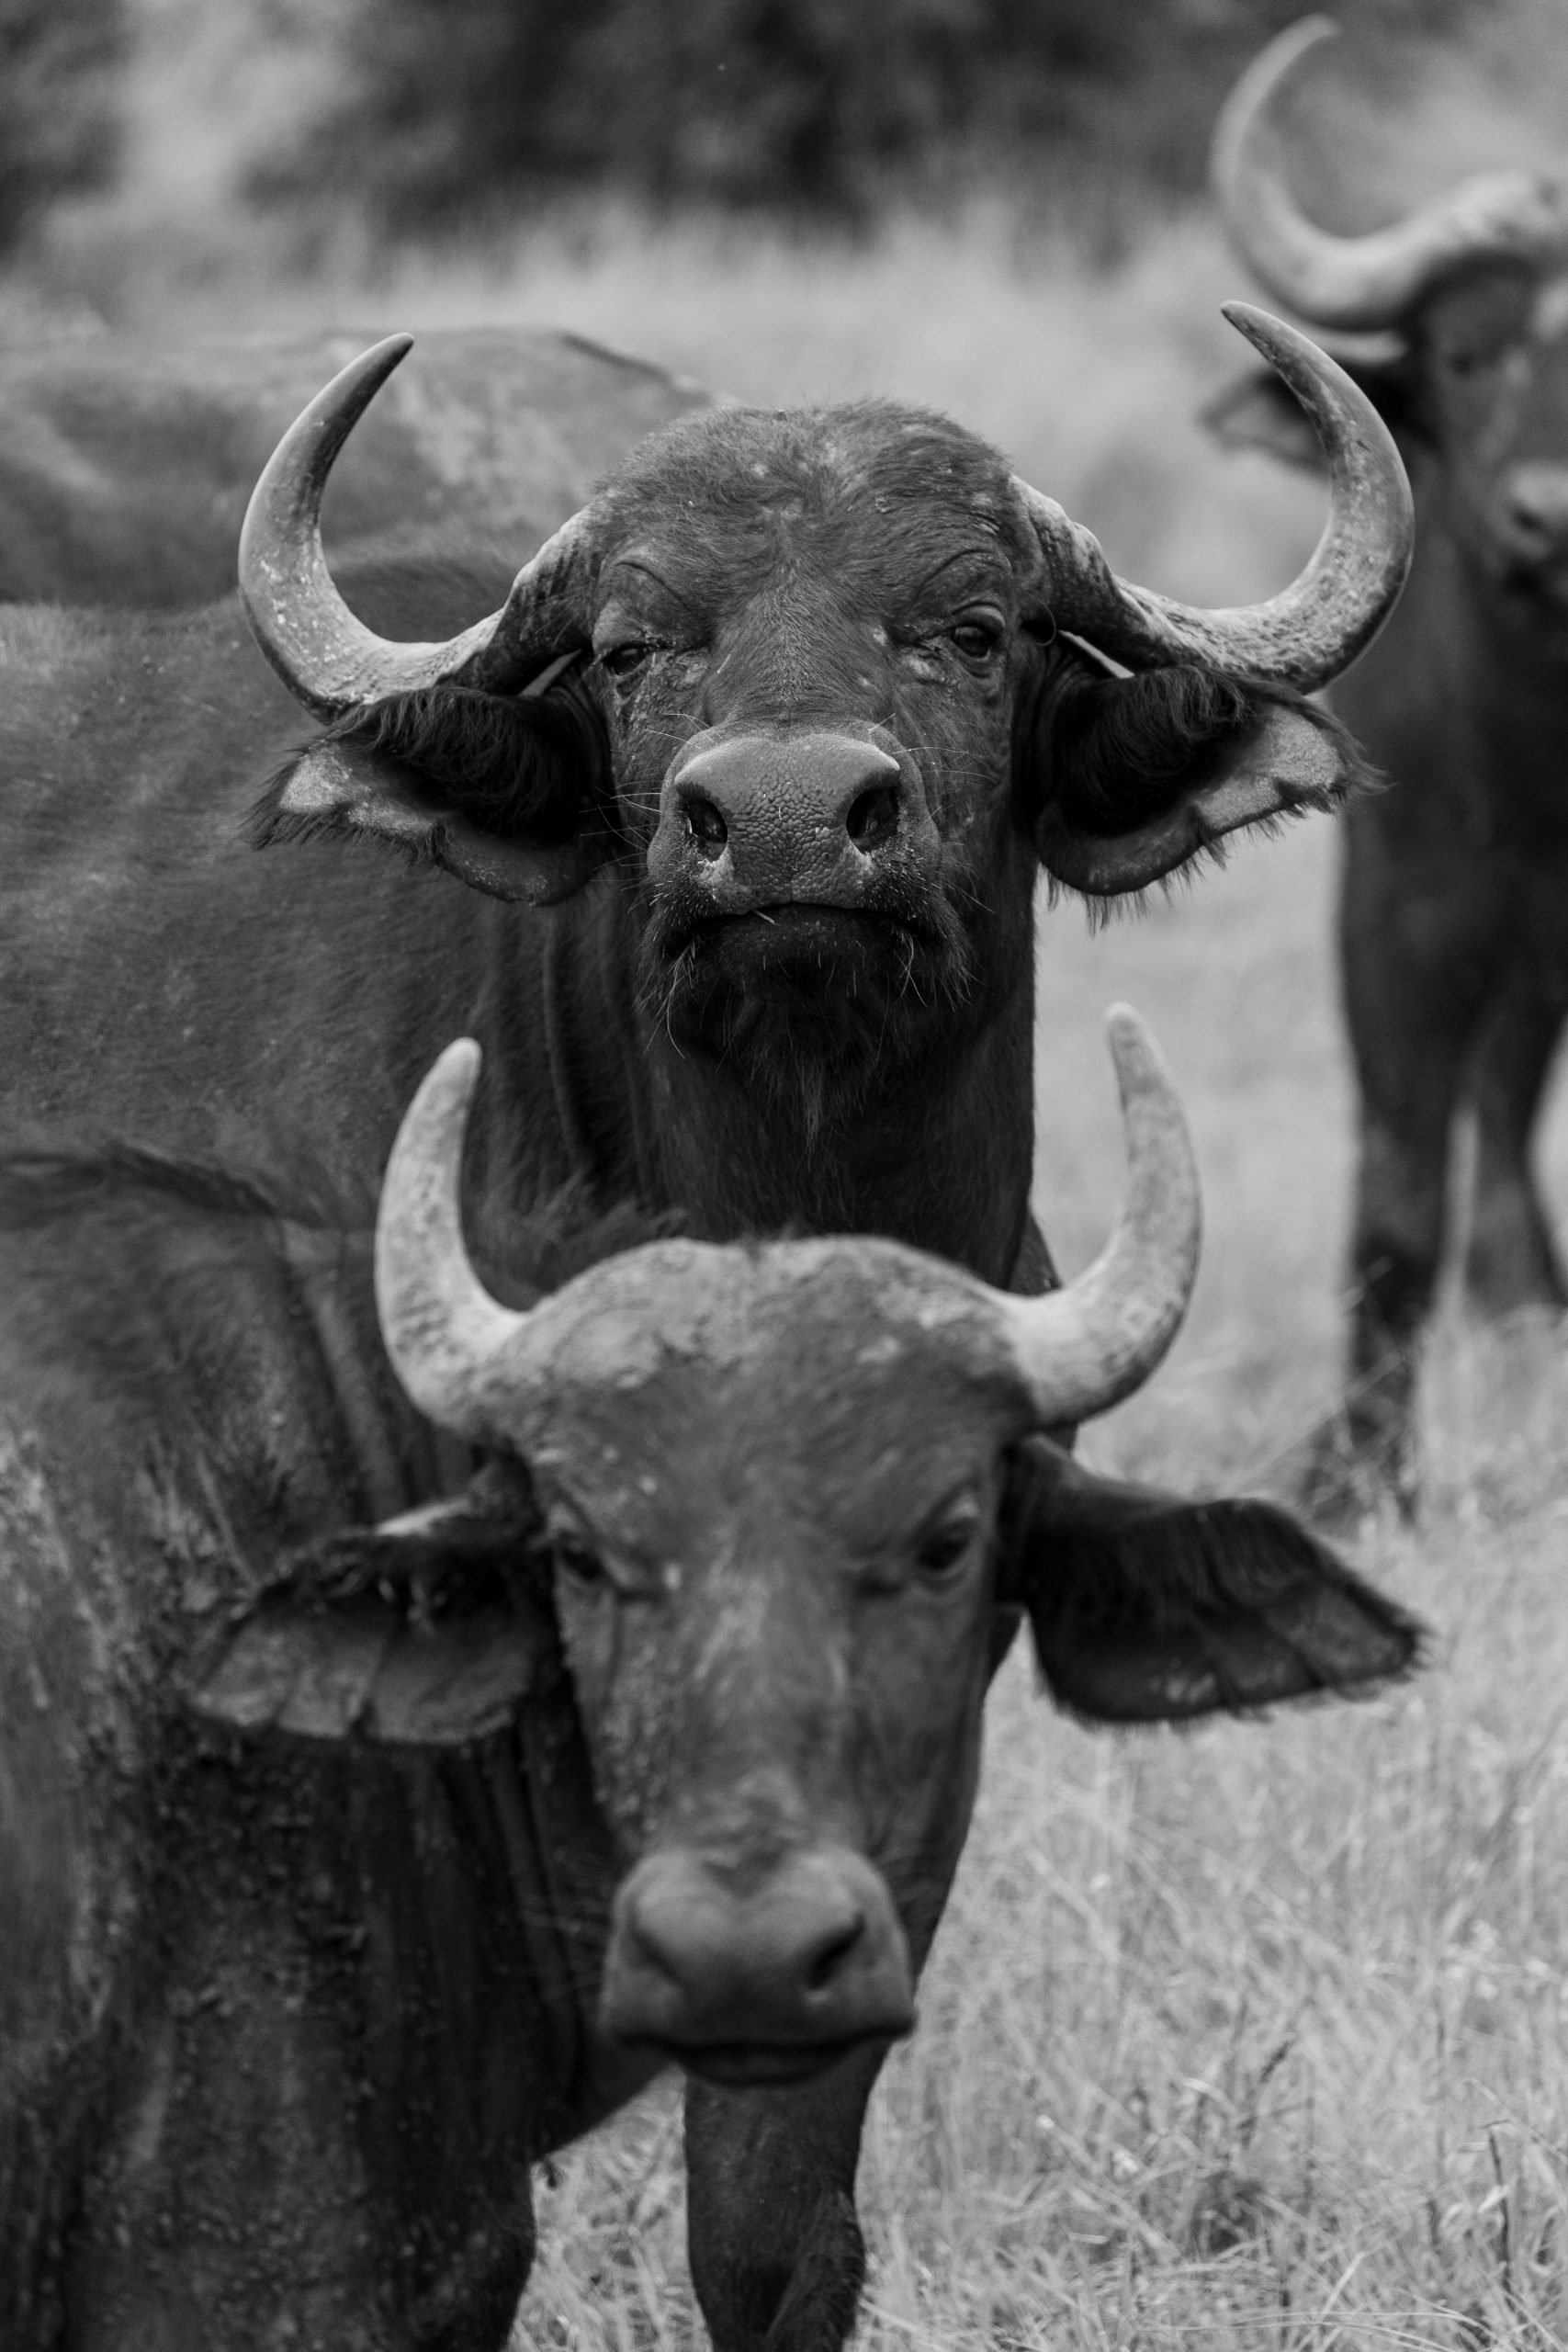 Two buffalo in portrait view